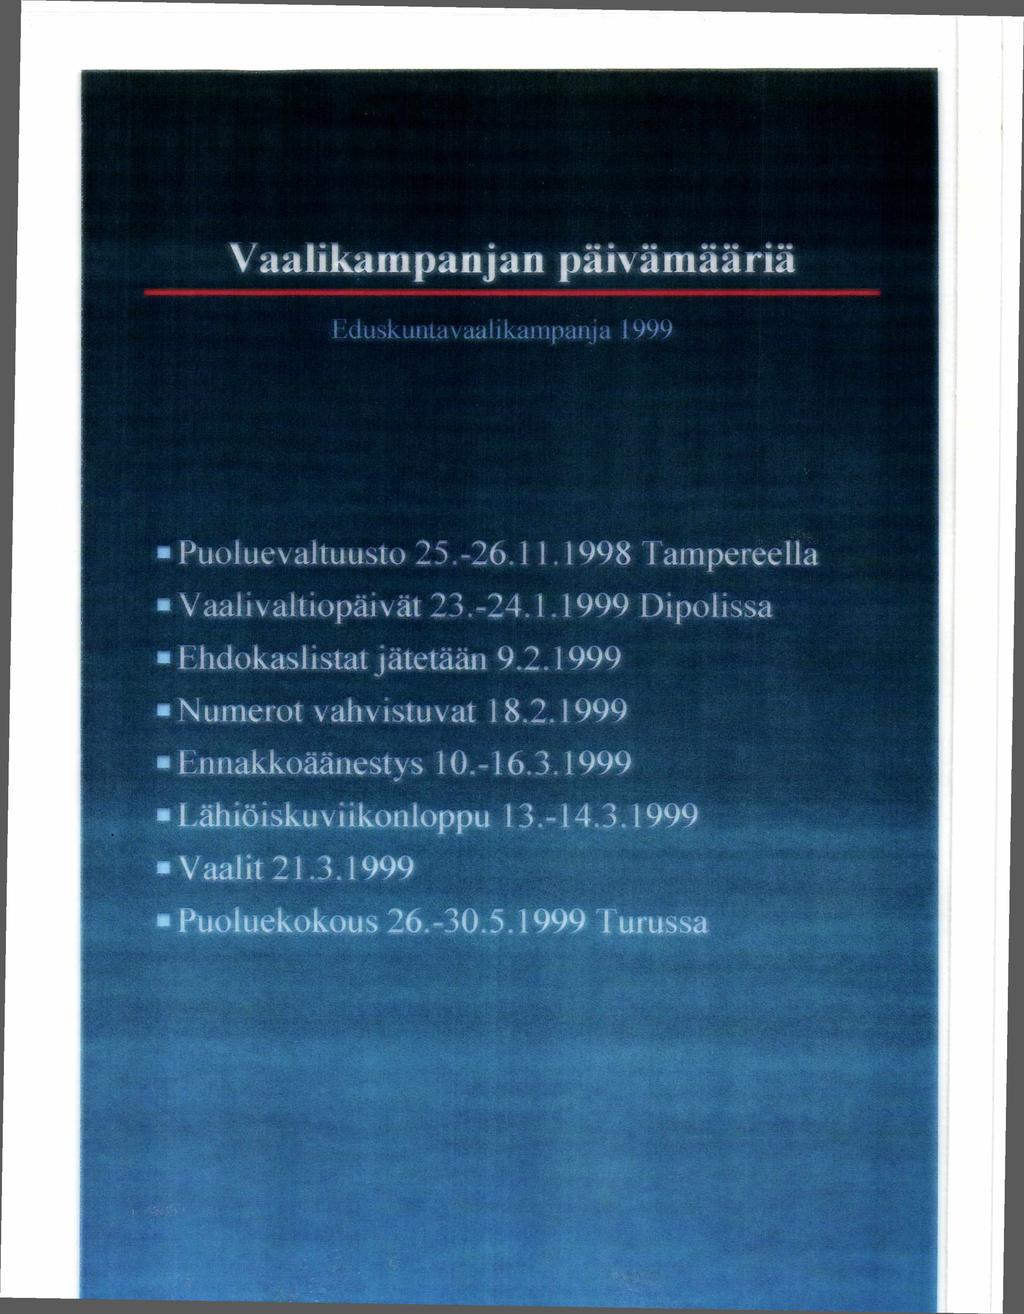 Vaalikampanjan päivämääriä Tduskuntav aalikampanj a 1999 Puoluevaltuusto 25.-26.11.1998 Tampereella Vaali valtiopäivät 23.-24.1.1999 Dipolissa Ehdokaslistatjätetään 9.